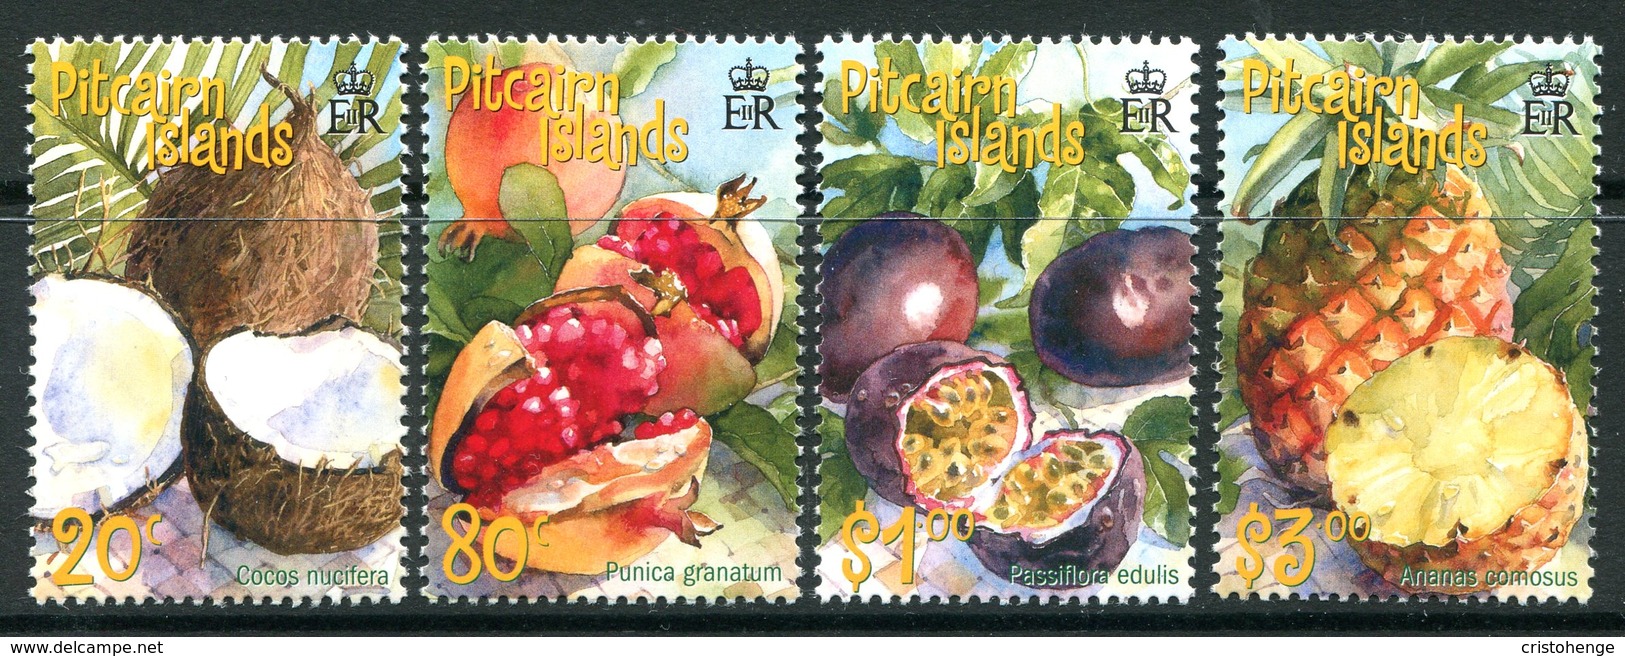 Pitcairn Islands 2001 Tropical Fruits Set LHM (SG 591-594) - Pitcairn Islands